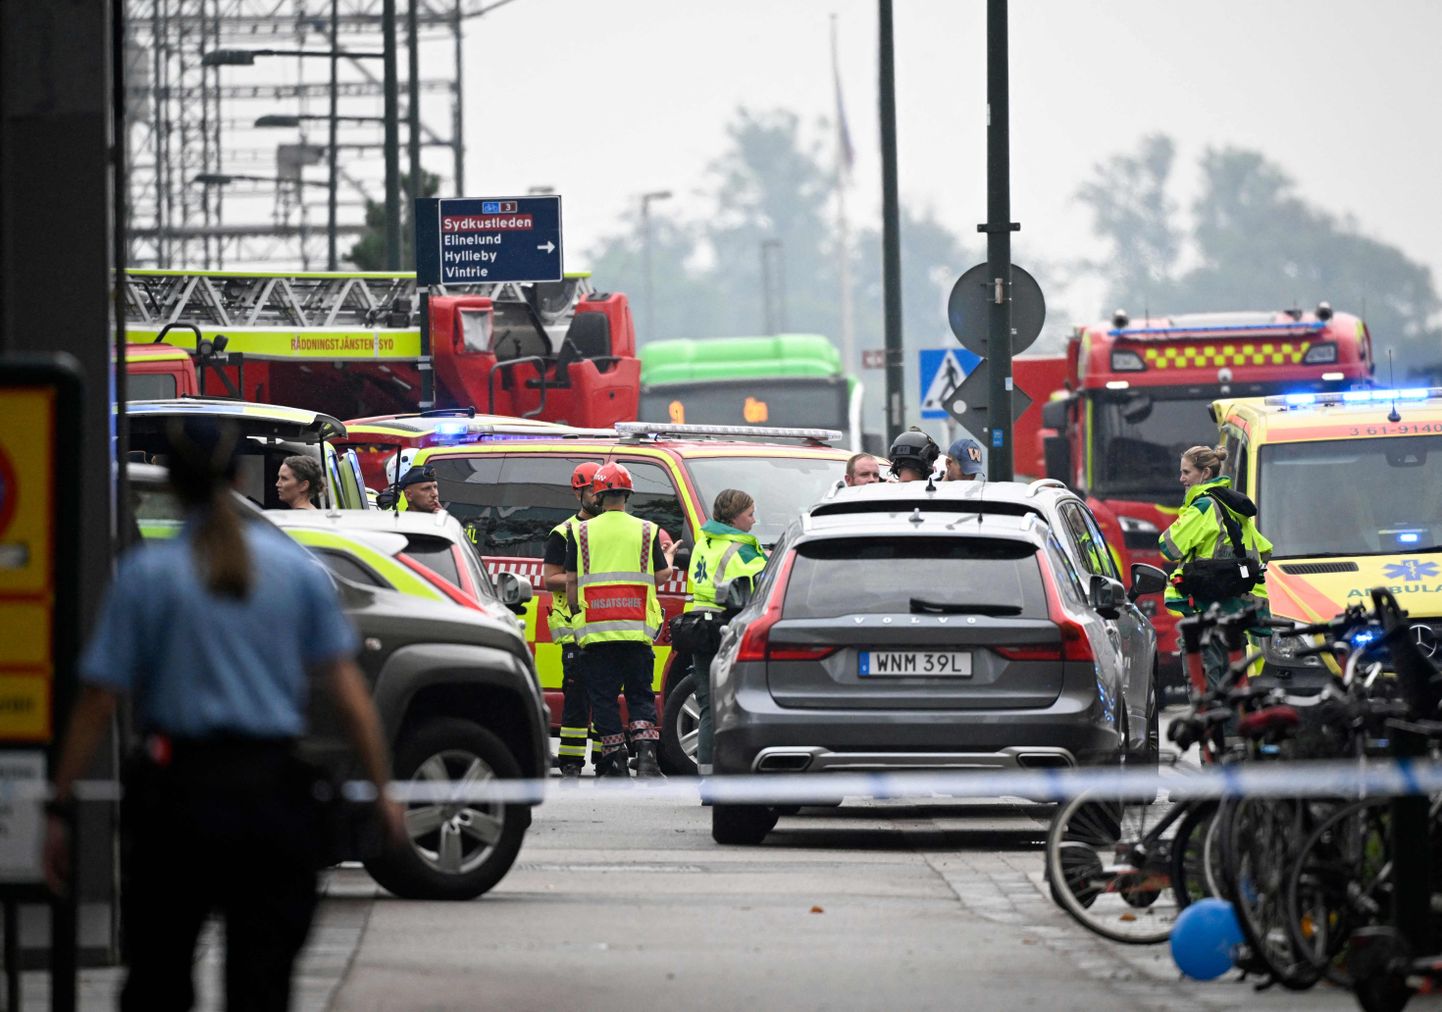 Malmö kaubanduskeskuses toimunud tulistamises sai viga 2 inimest.